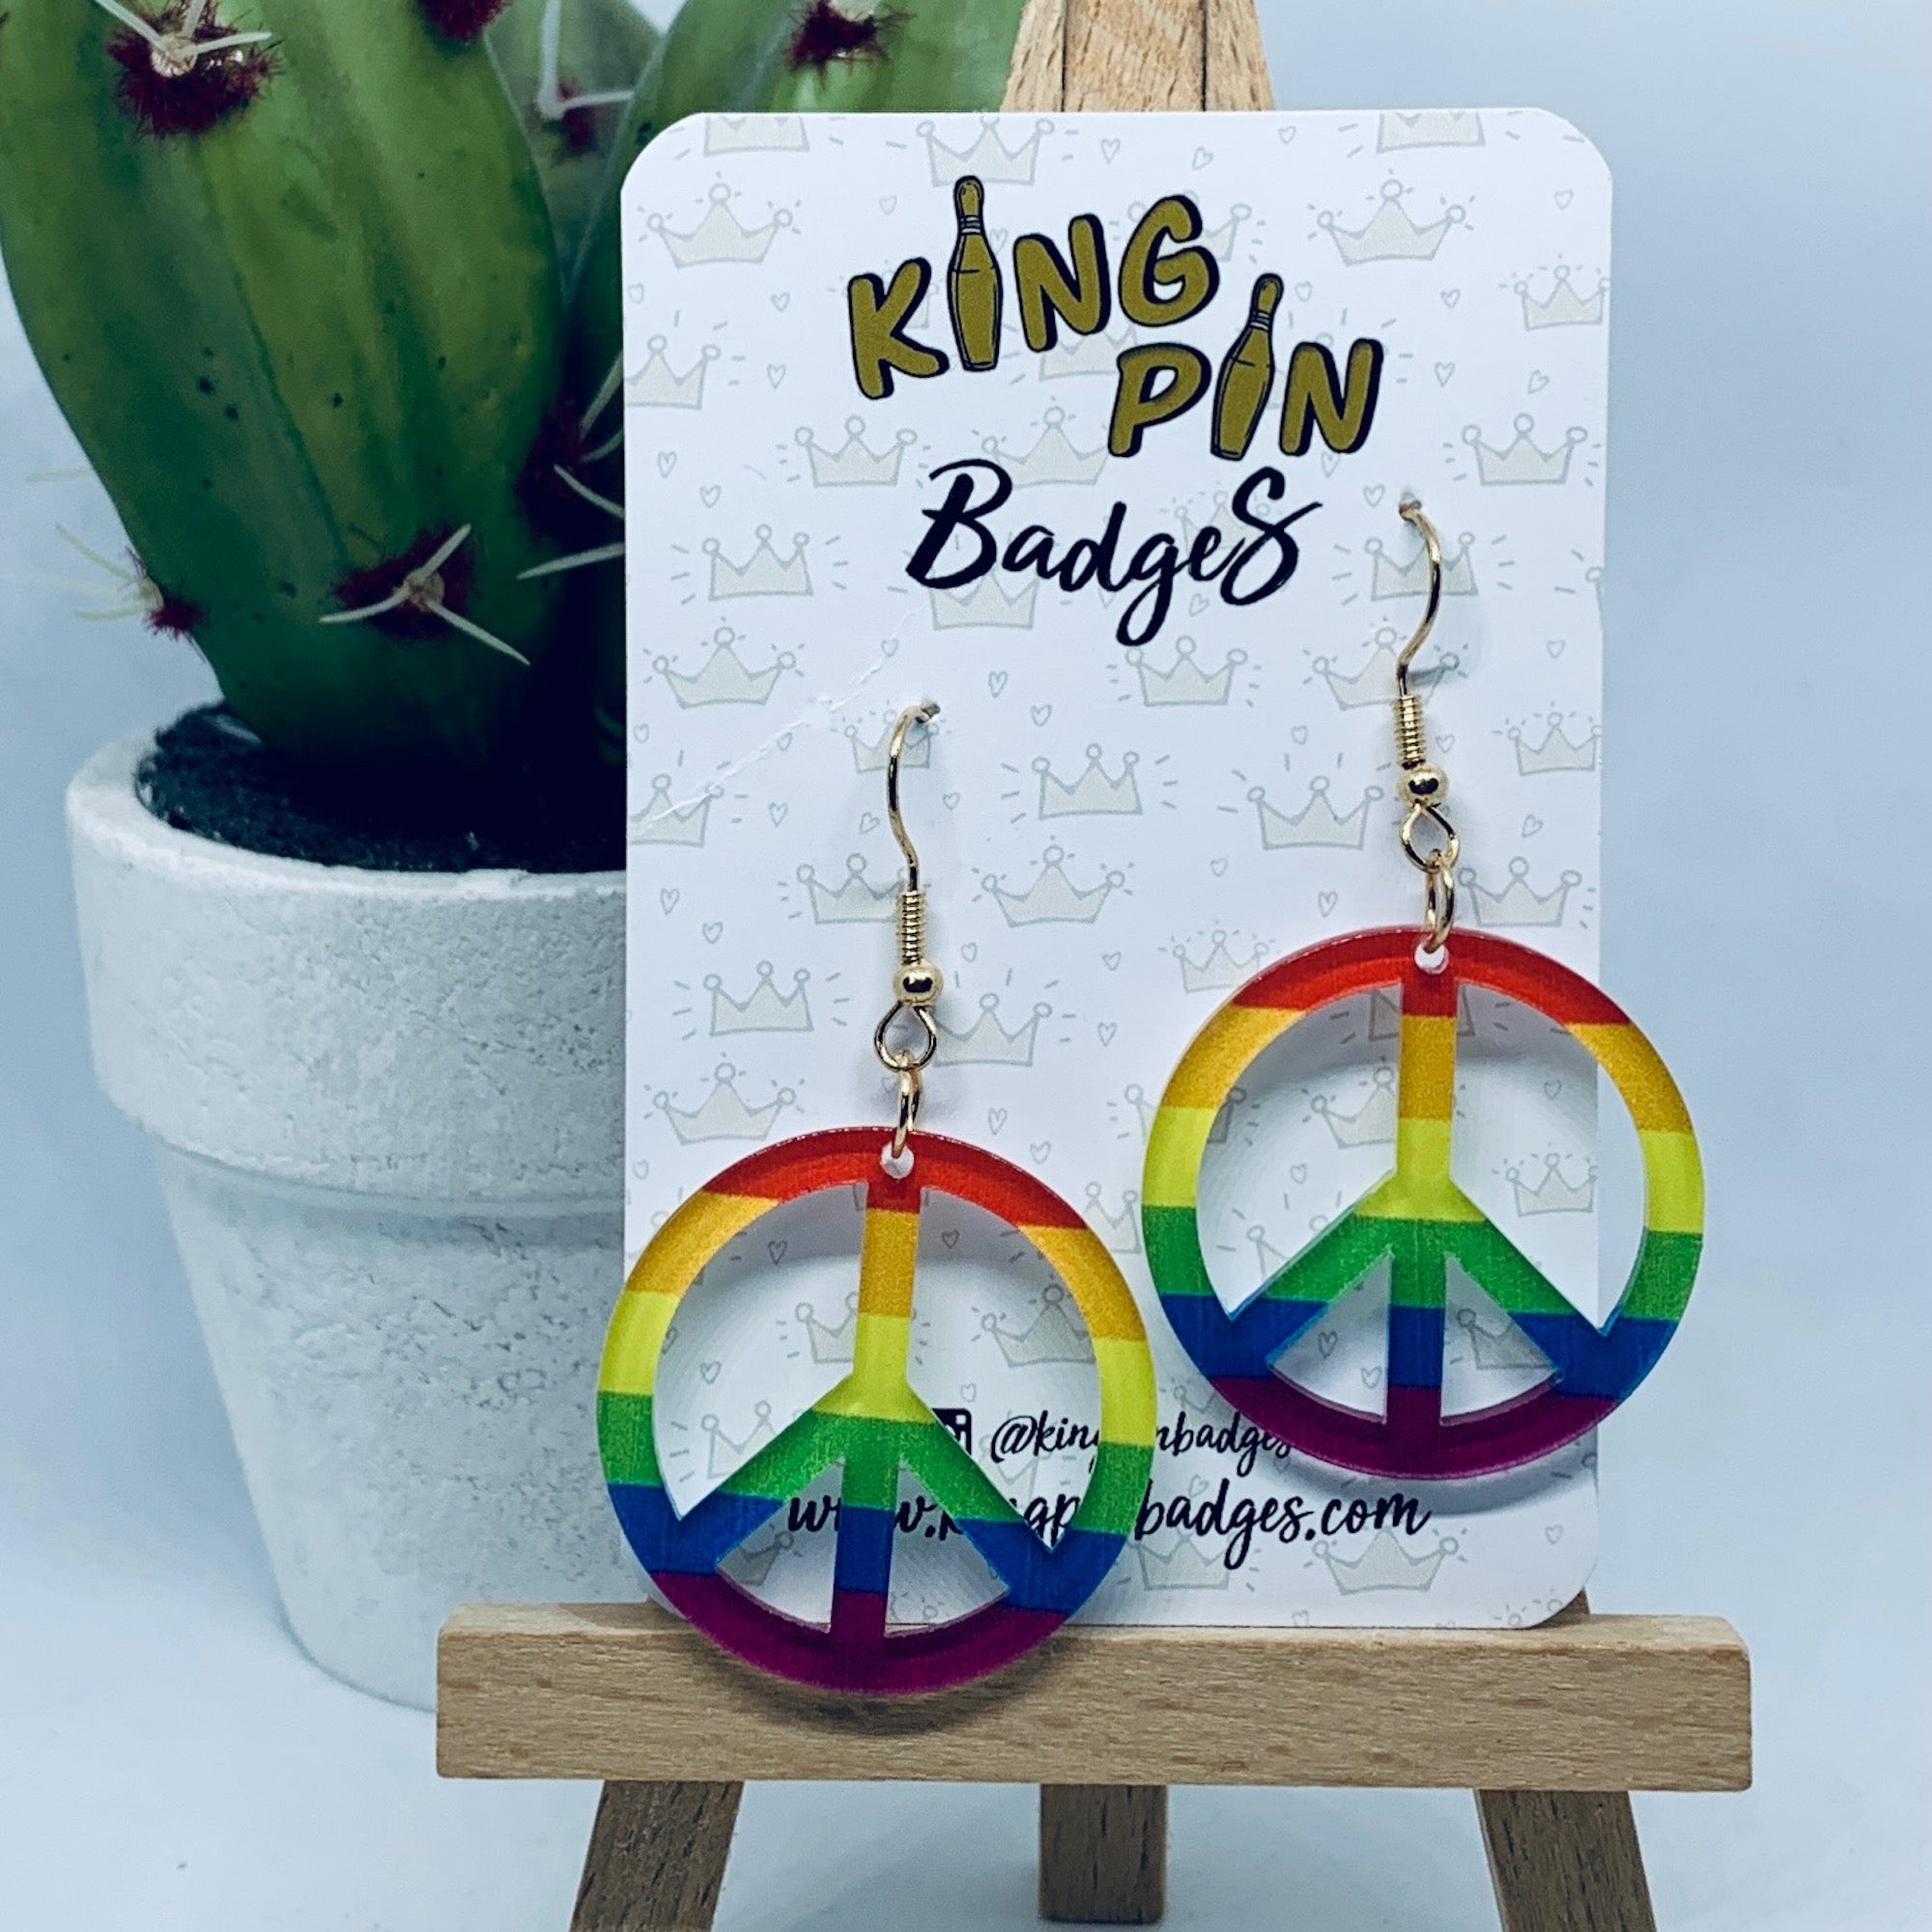 Rainbow Peace Sign Earrings